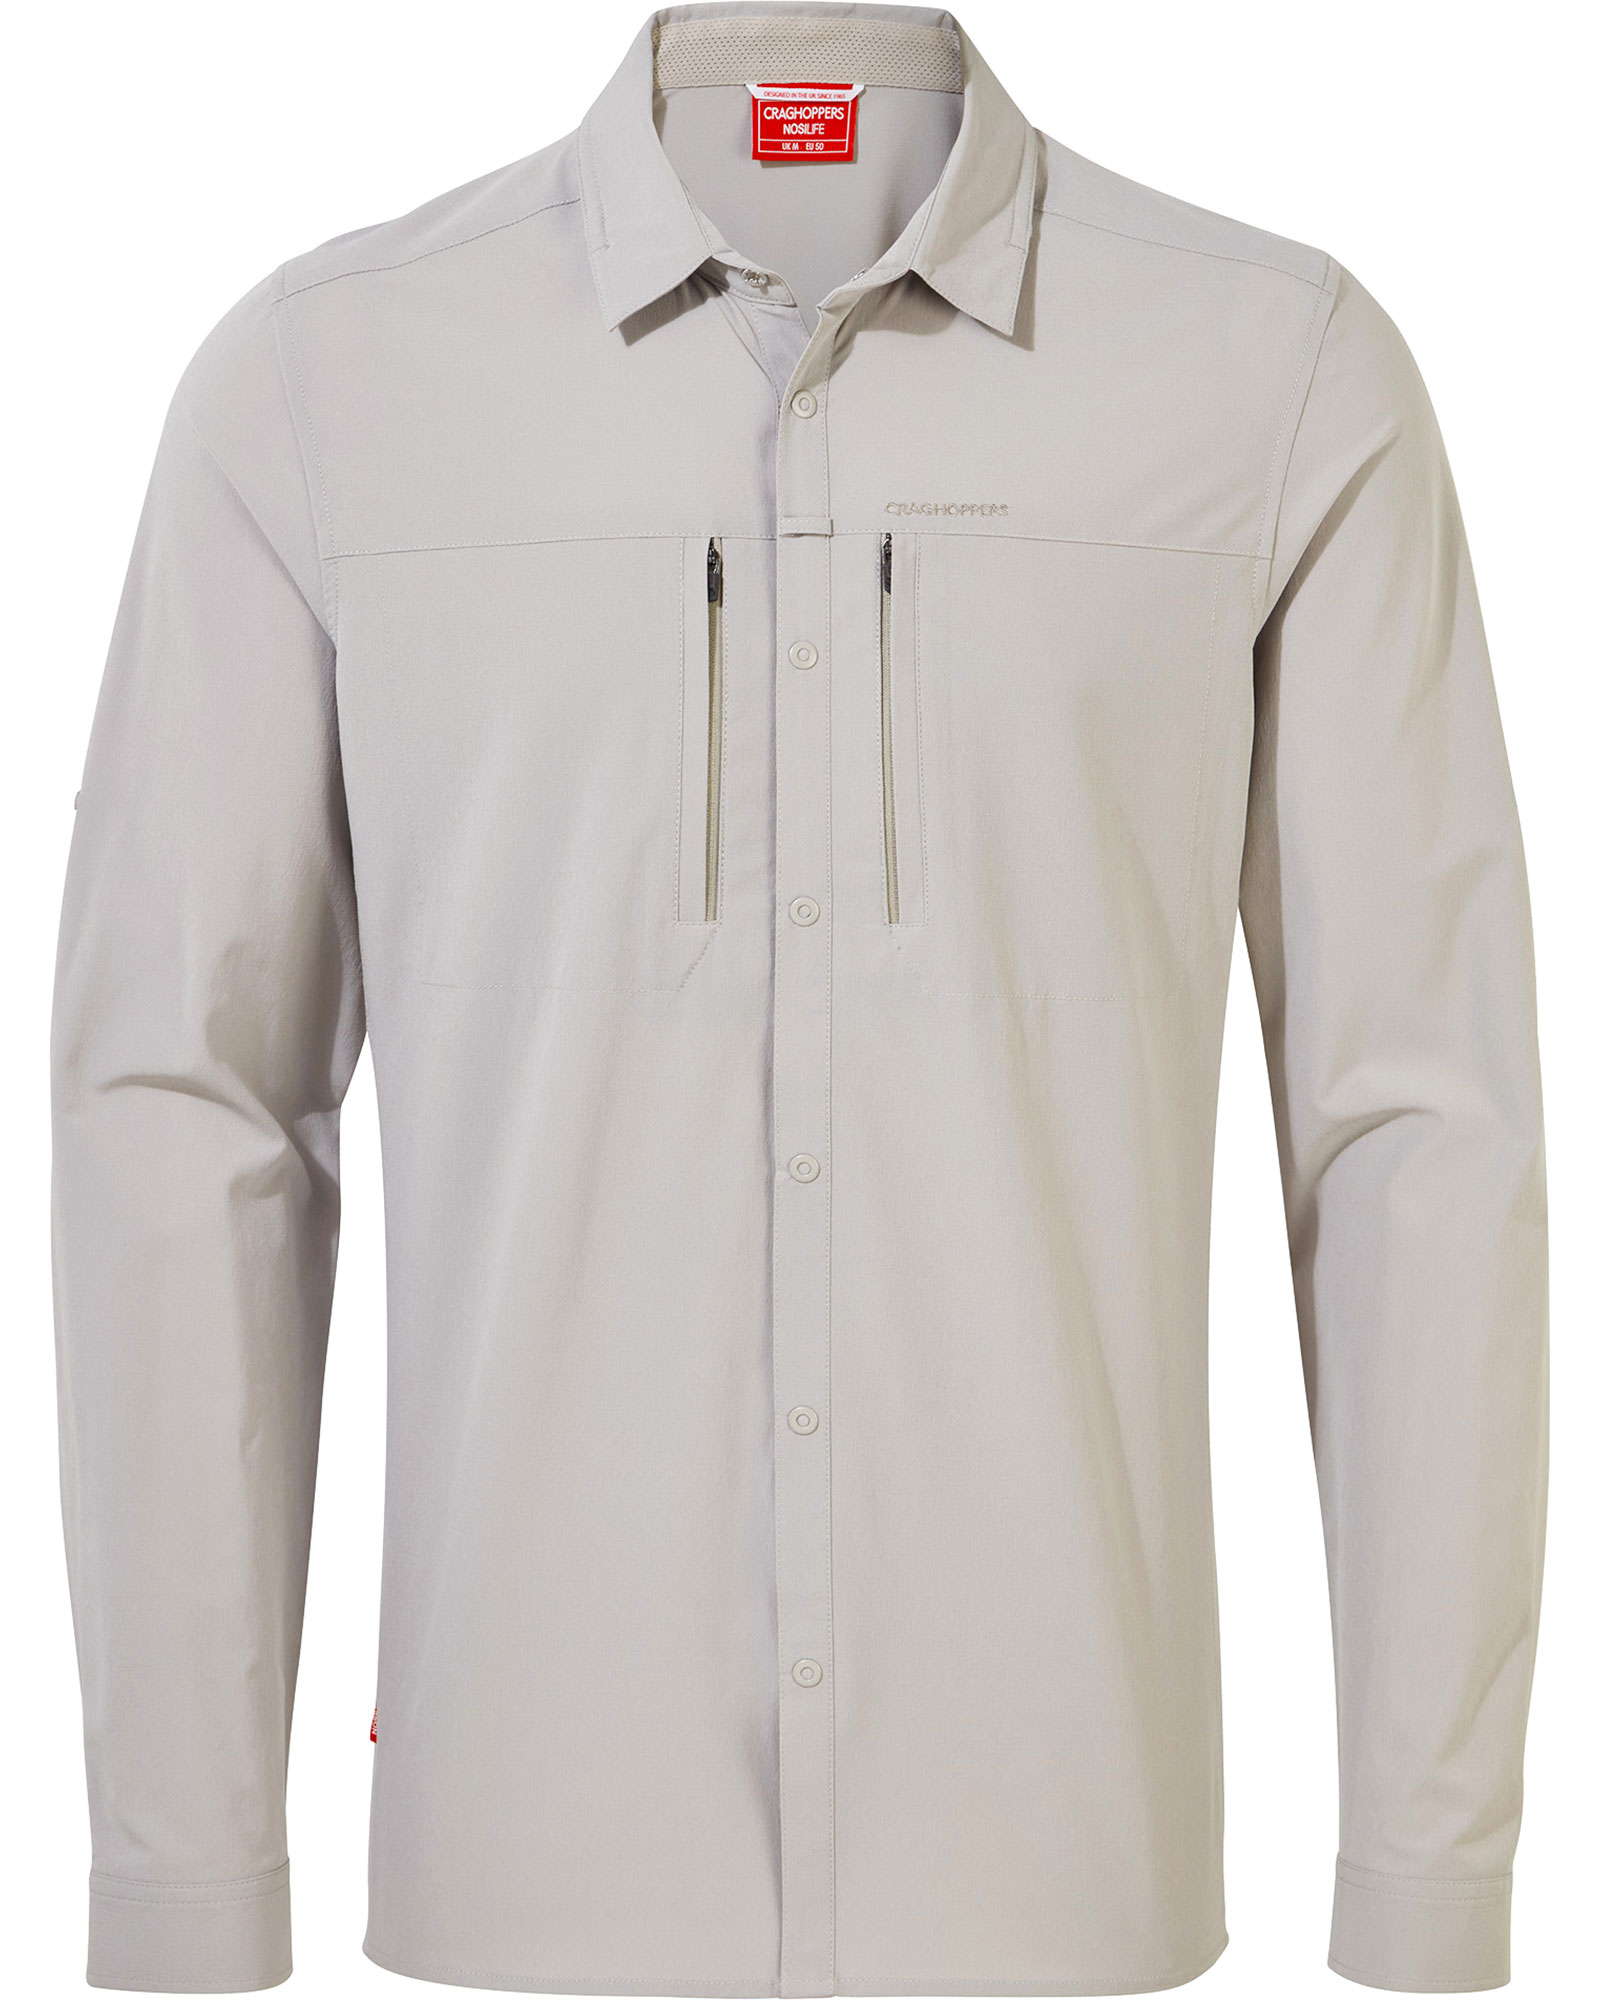 Craghoppers Men’s NosiLife Pro Long Sleeve Shirt - Parchment XL